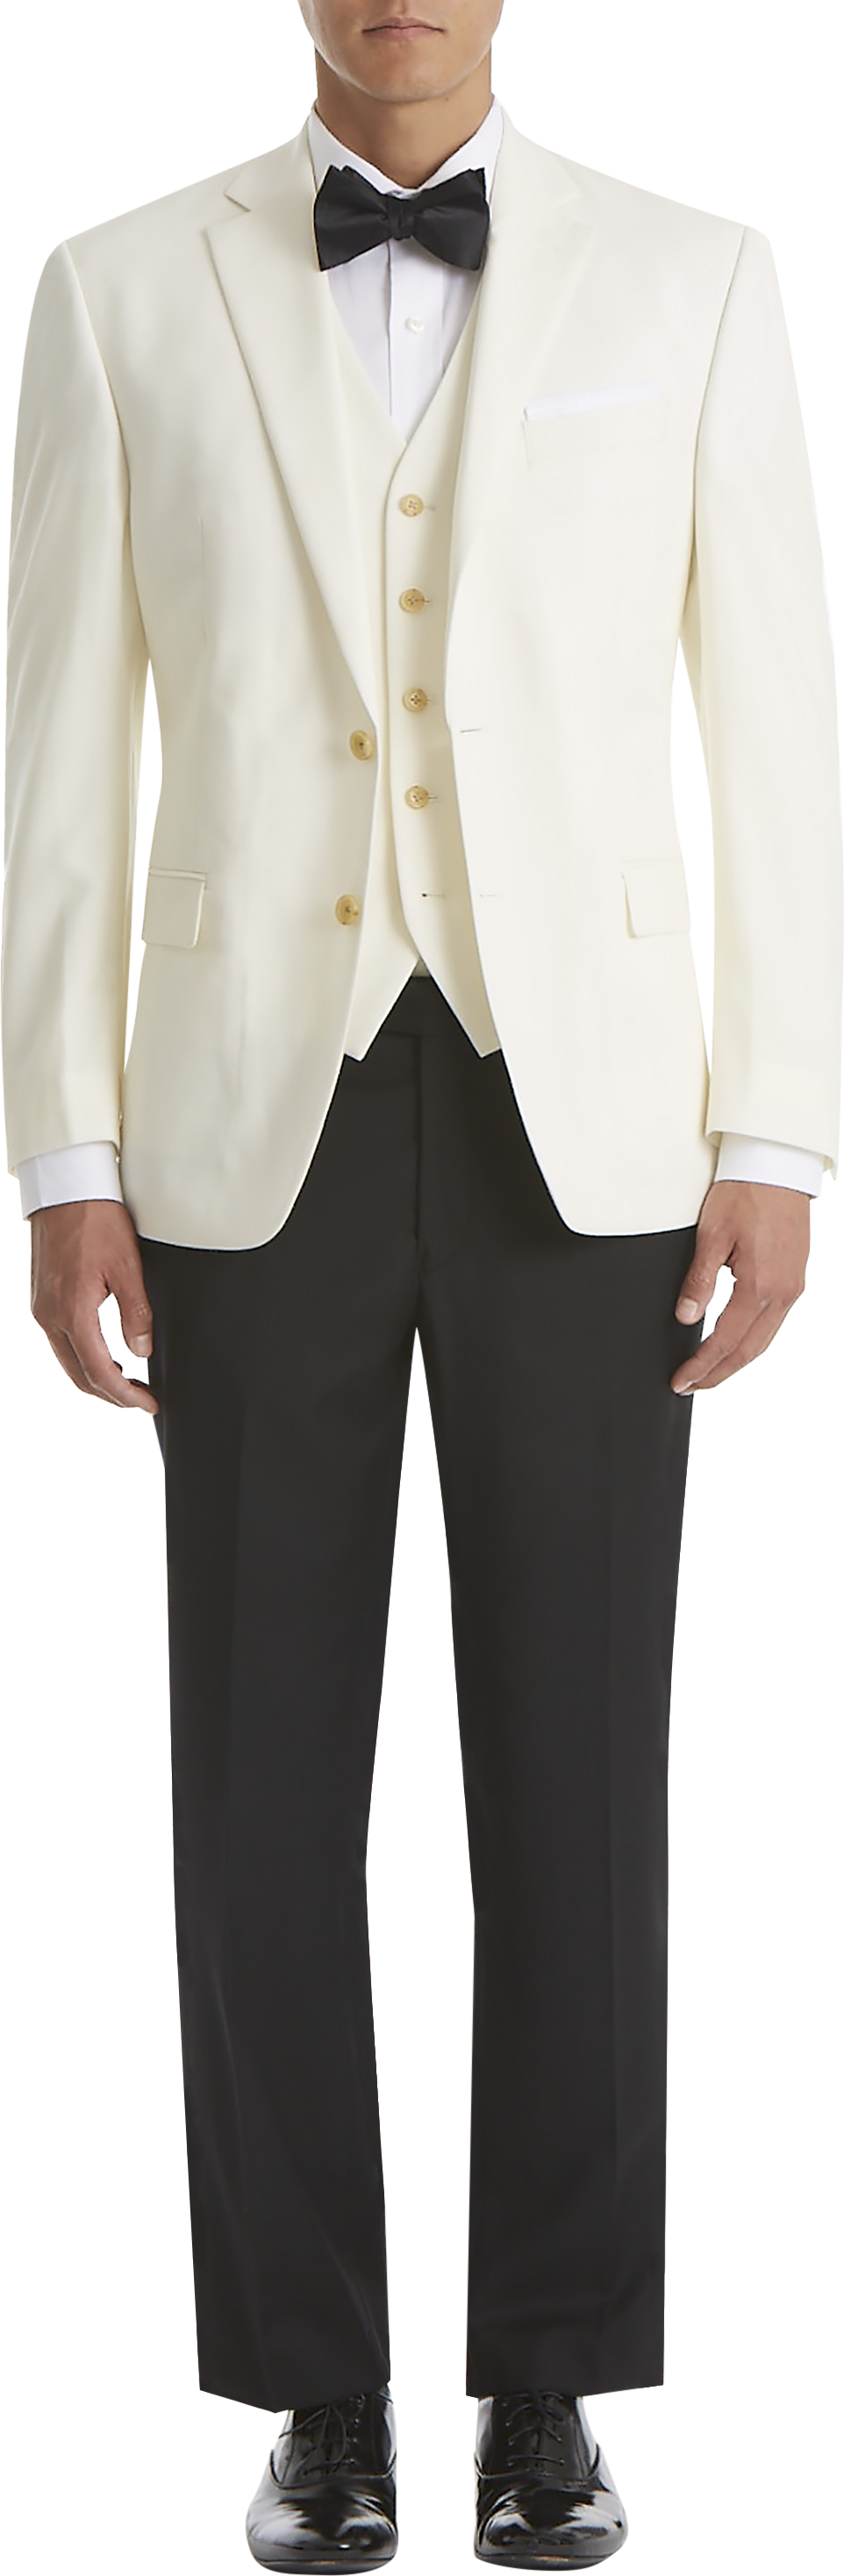 Mens Classic Fit, Suits - Lauren By Ralph Lauren Classic Fit Suit Separates Coat, Cream - Men's Wearhouse